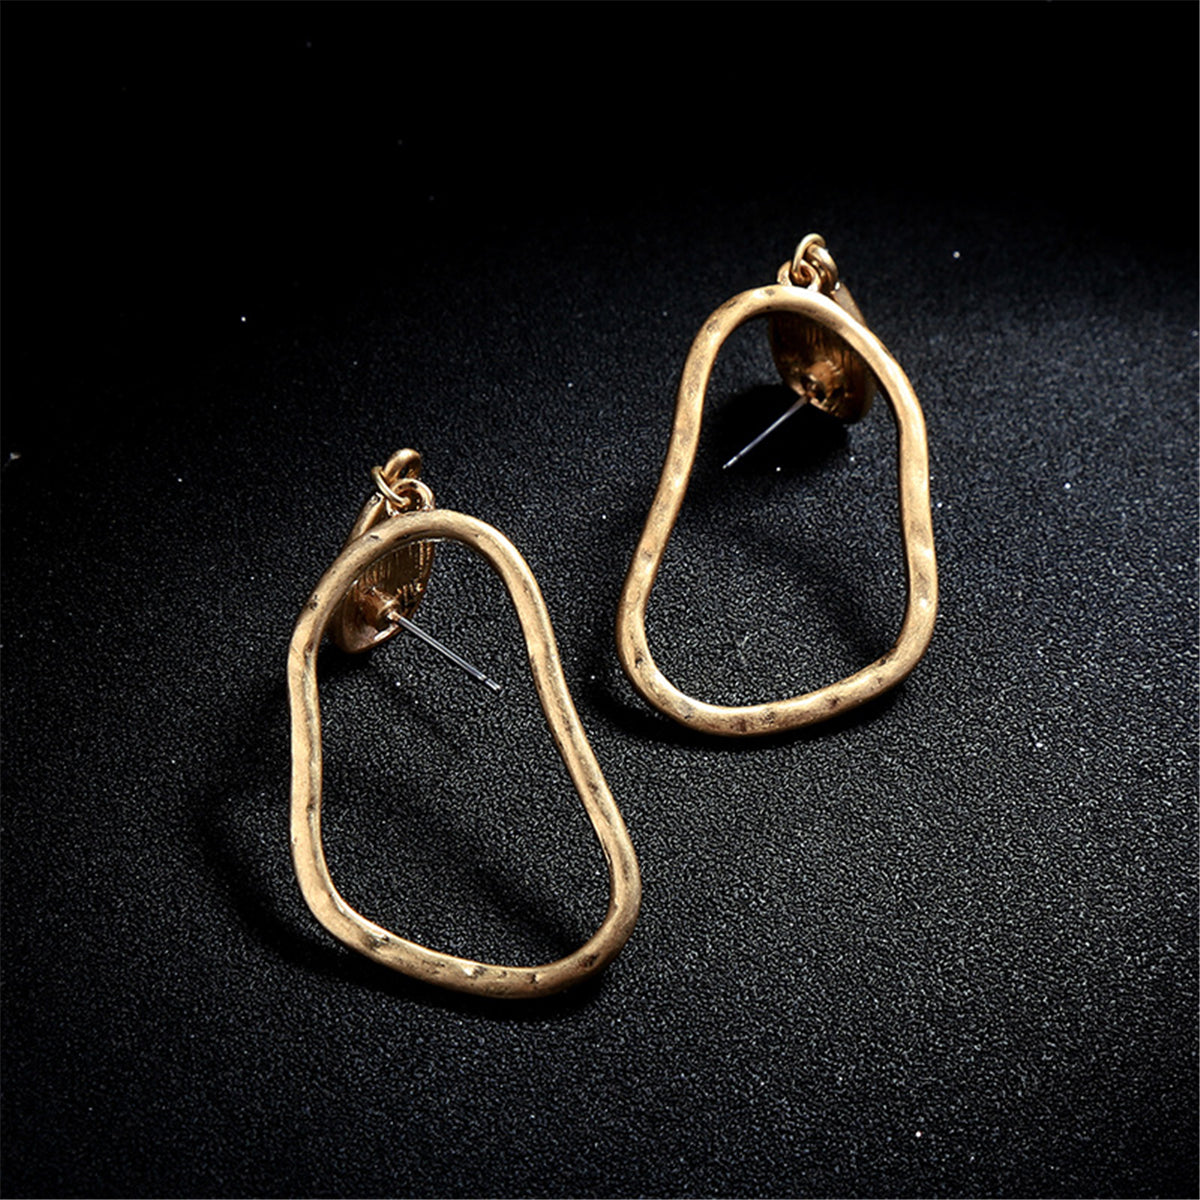 18K Gold-Plated Open Geometric Drop Earrings